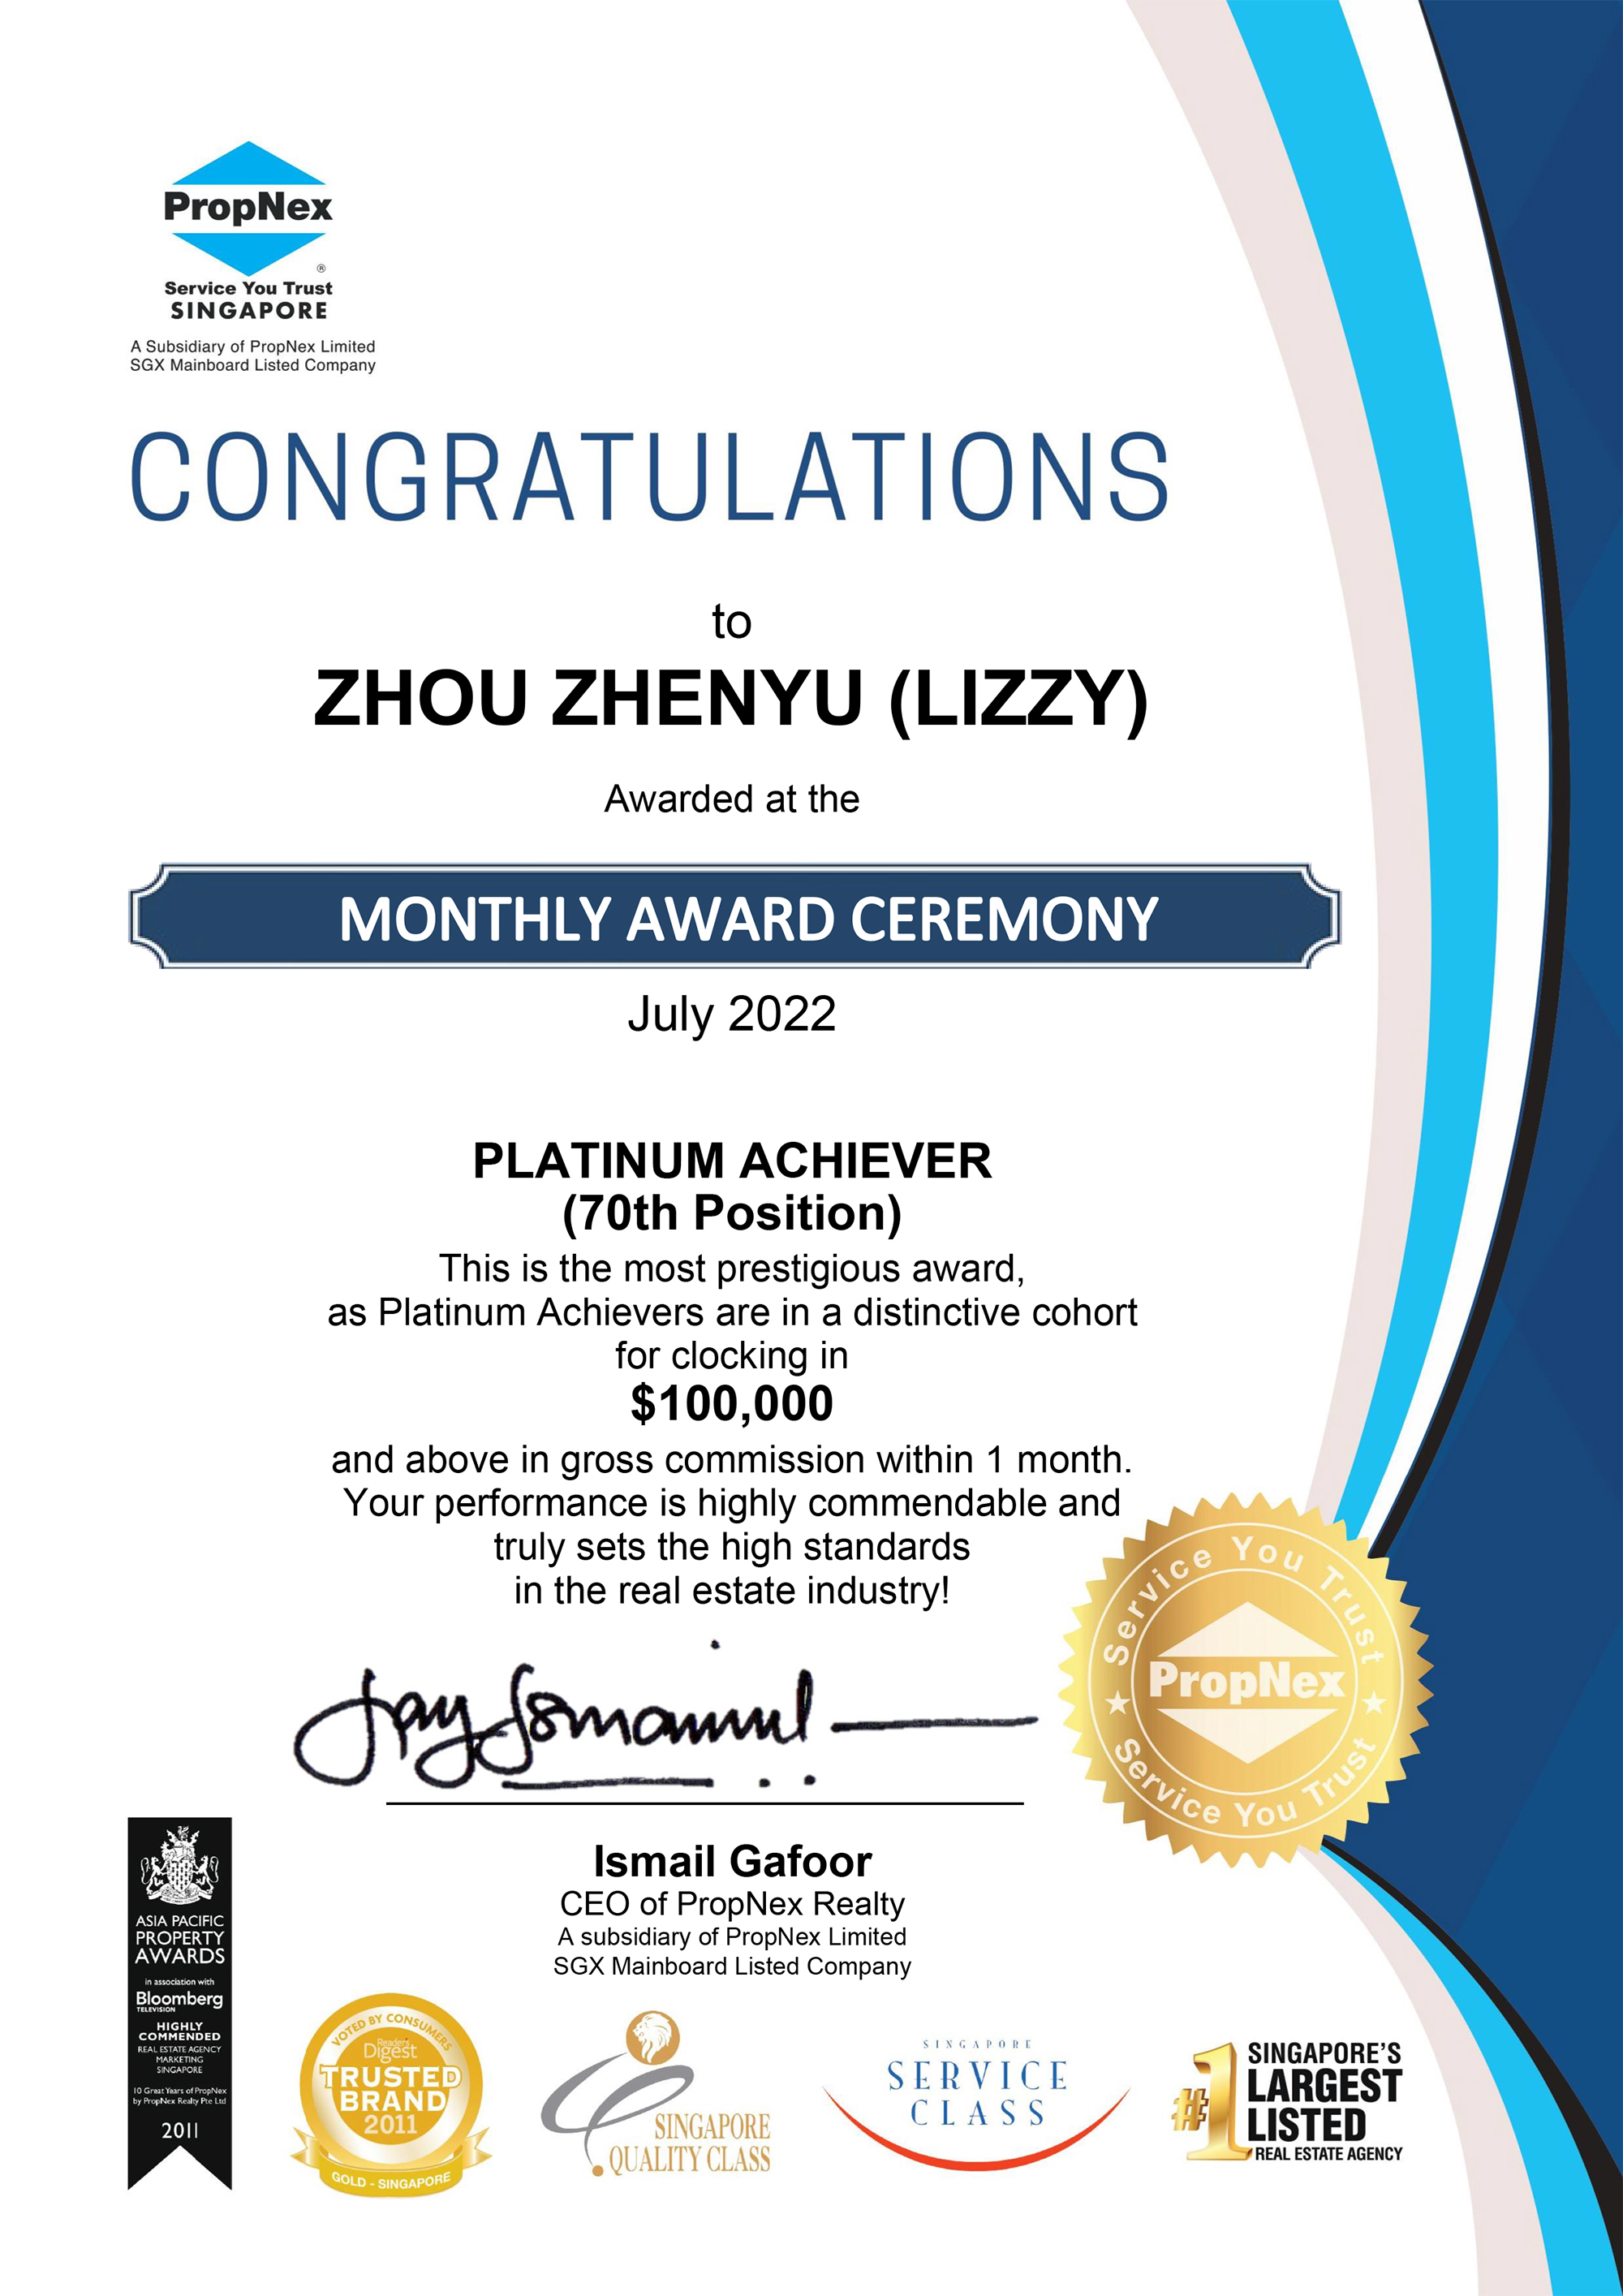 lizzy-zhou